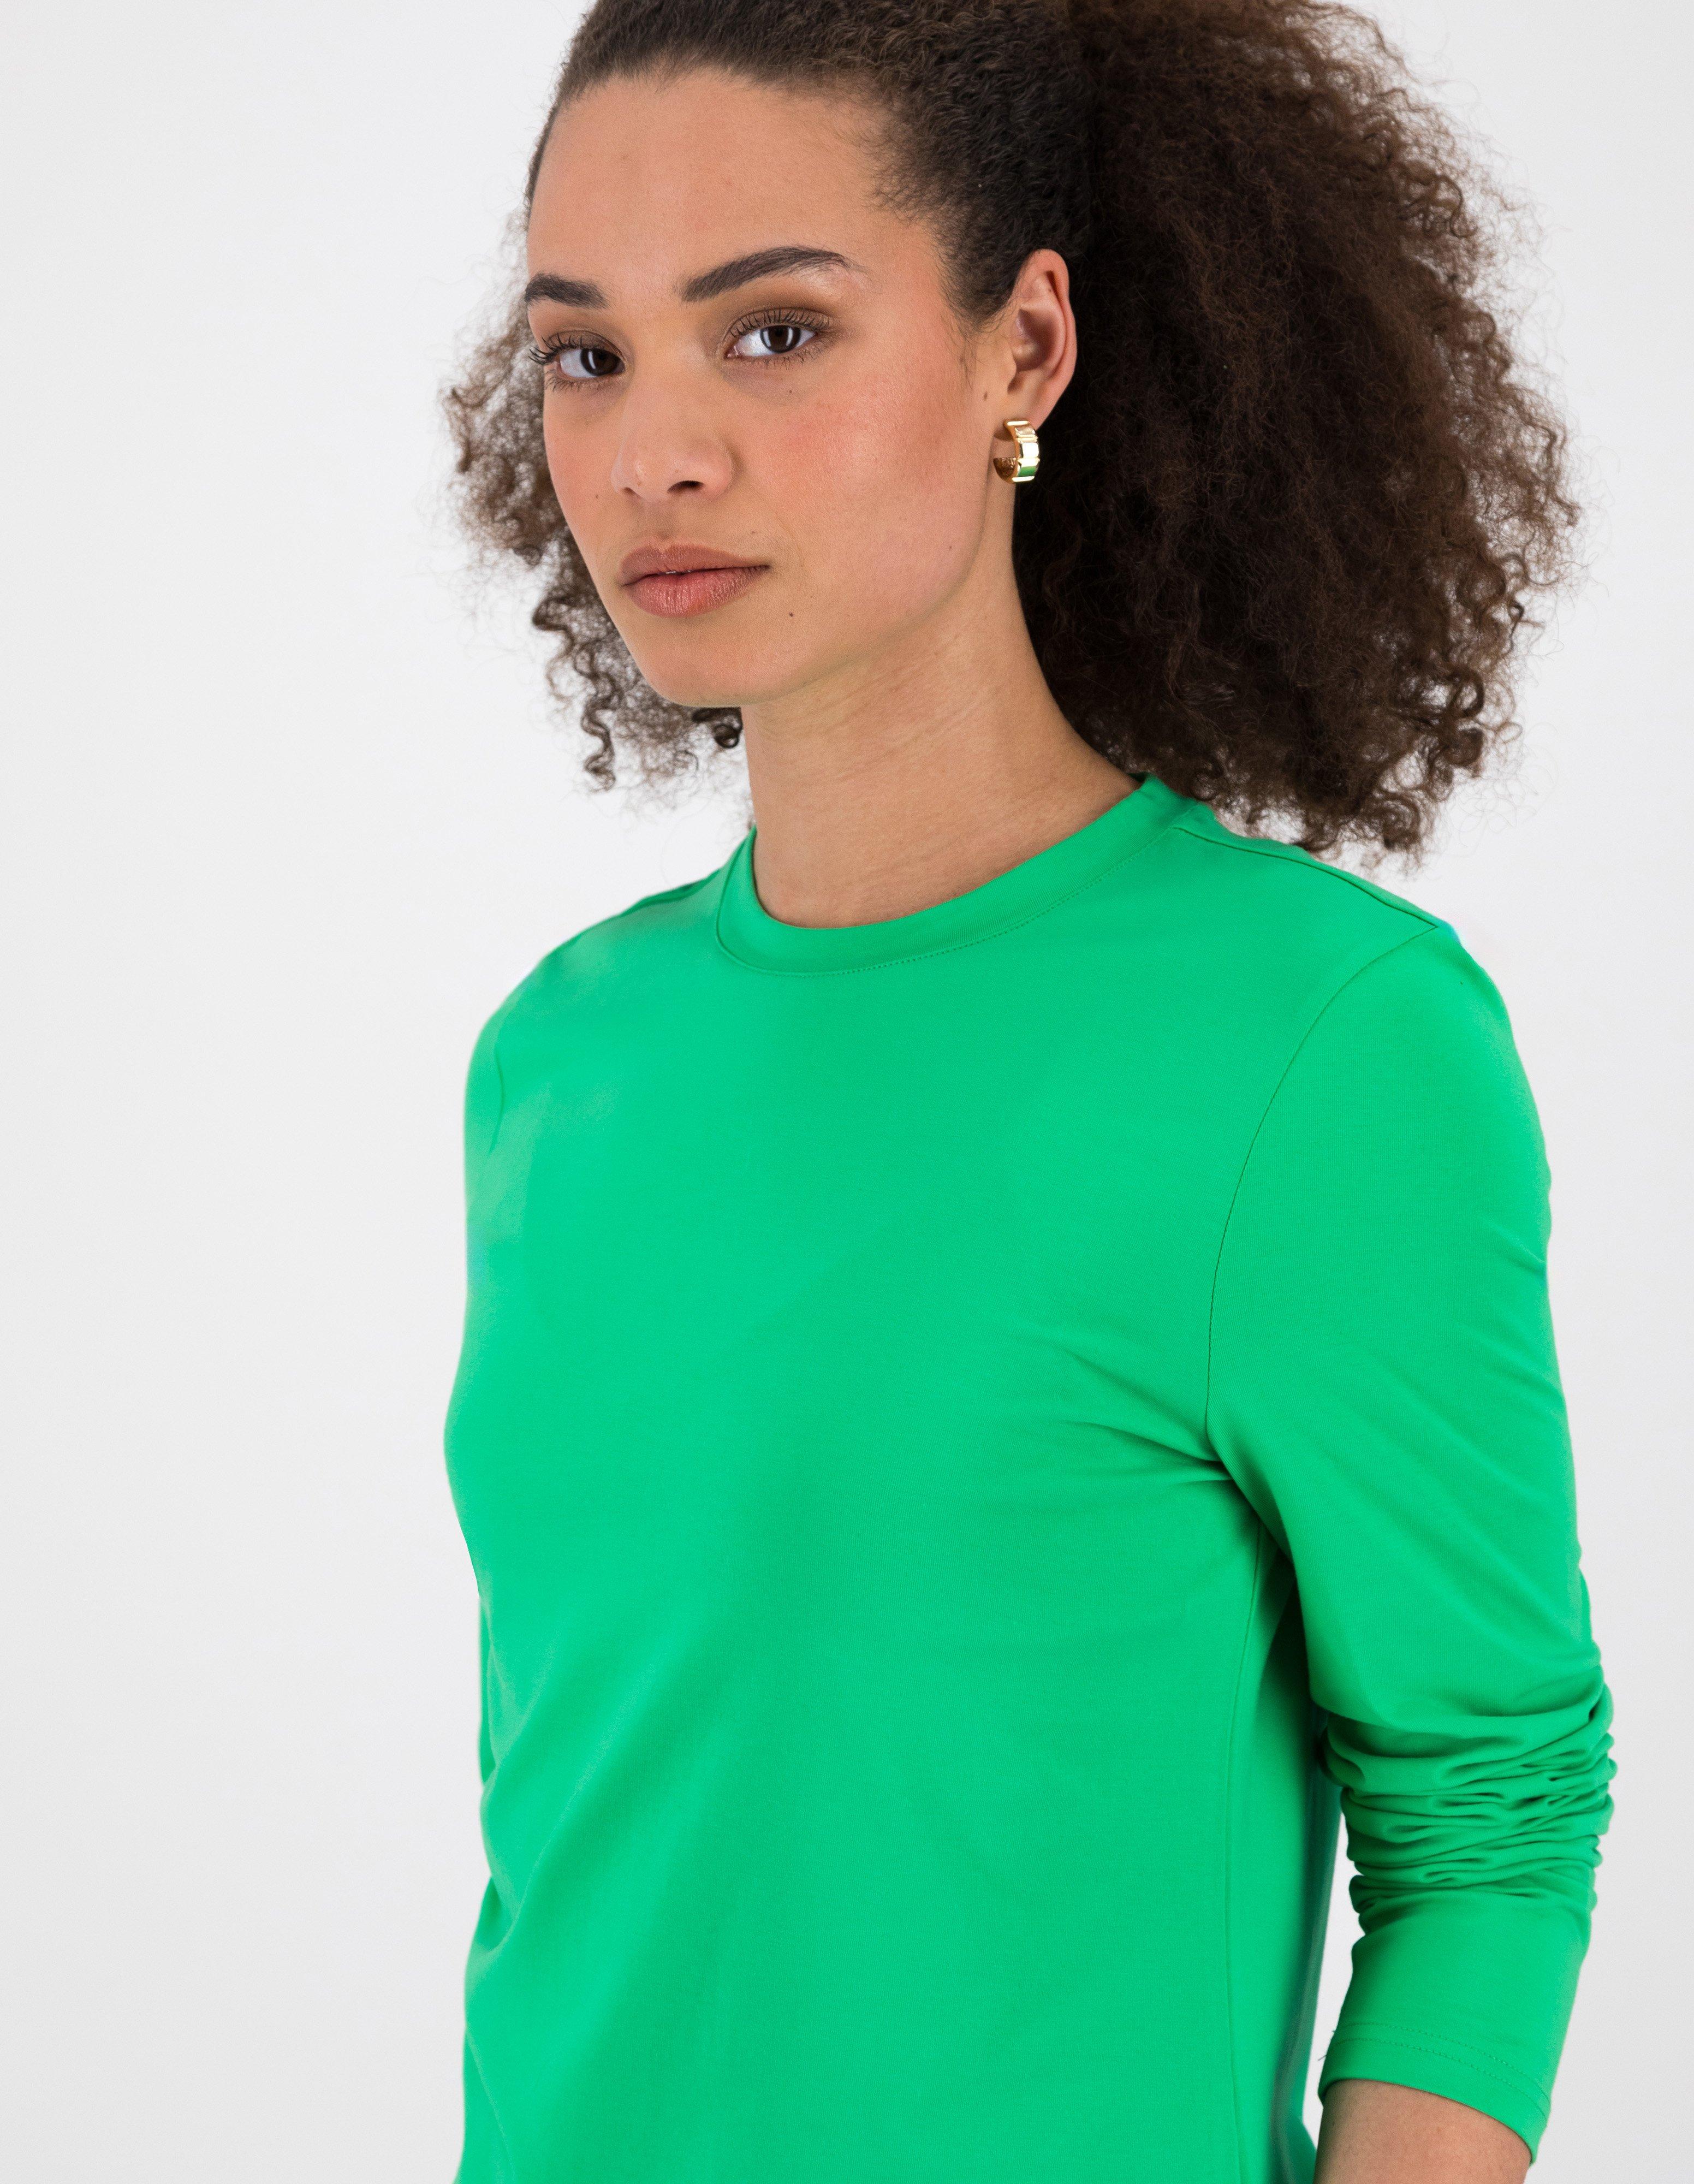 Clea Long Sleeve Tee -  Green